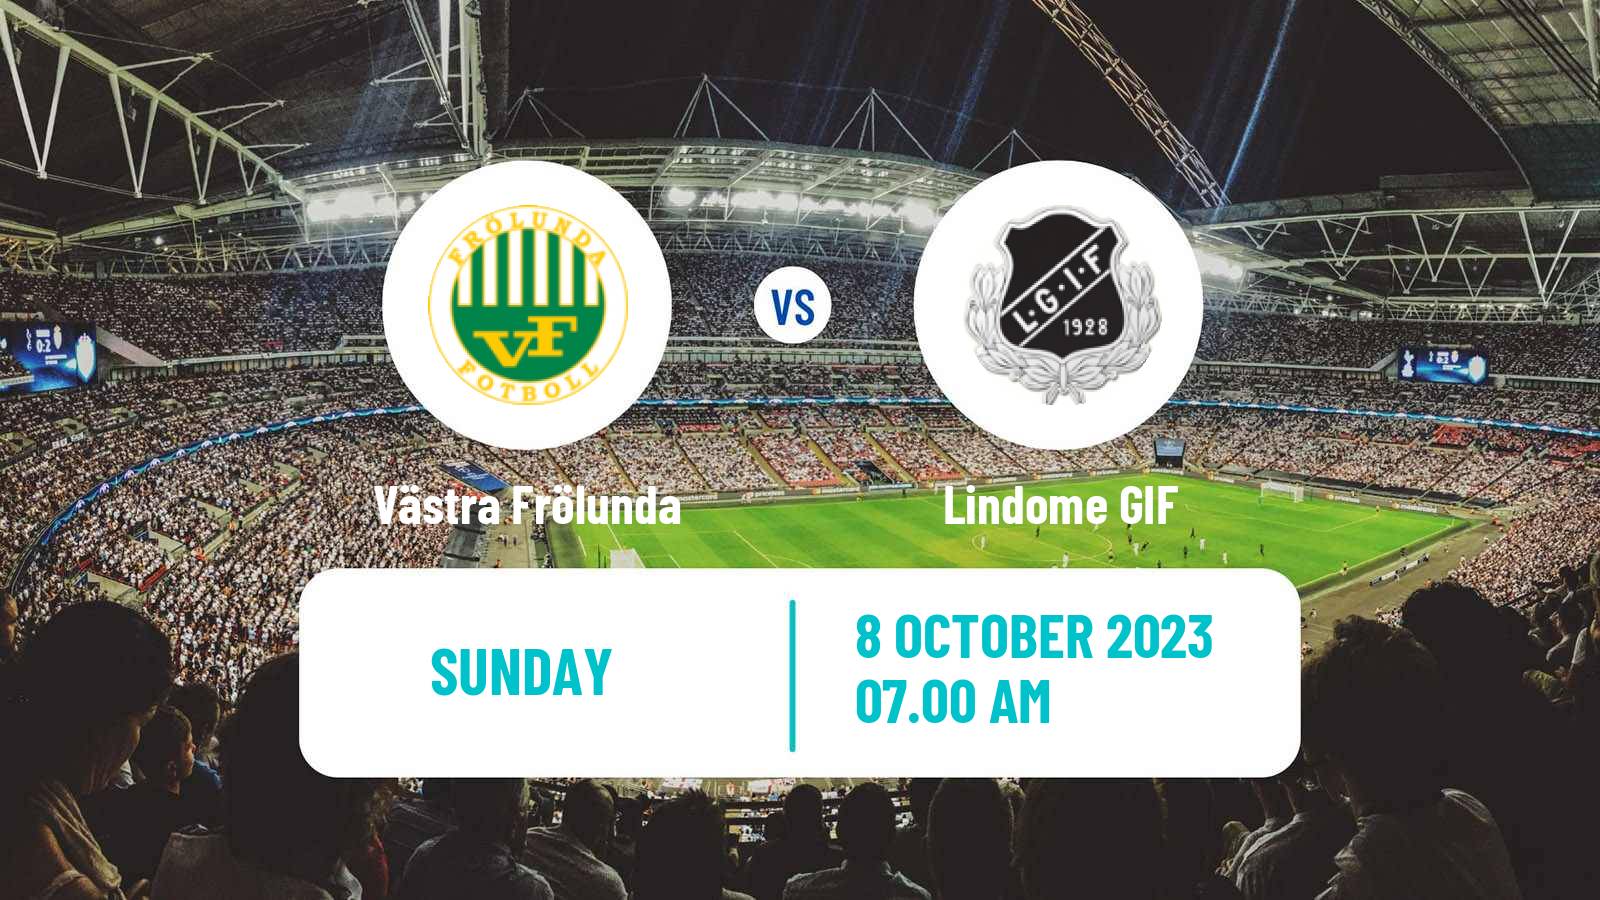 Soccer Swedish Division 2 - Västra Götaland Västra Frölunda - Lindome